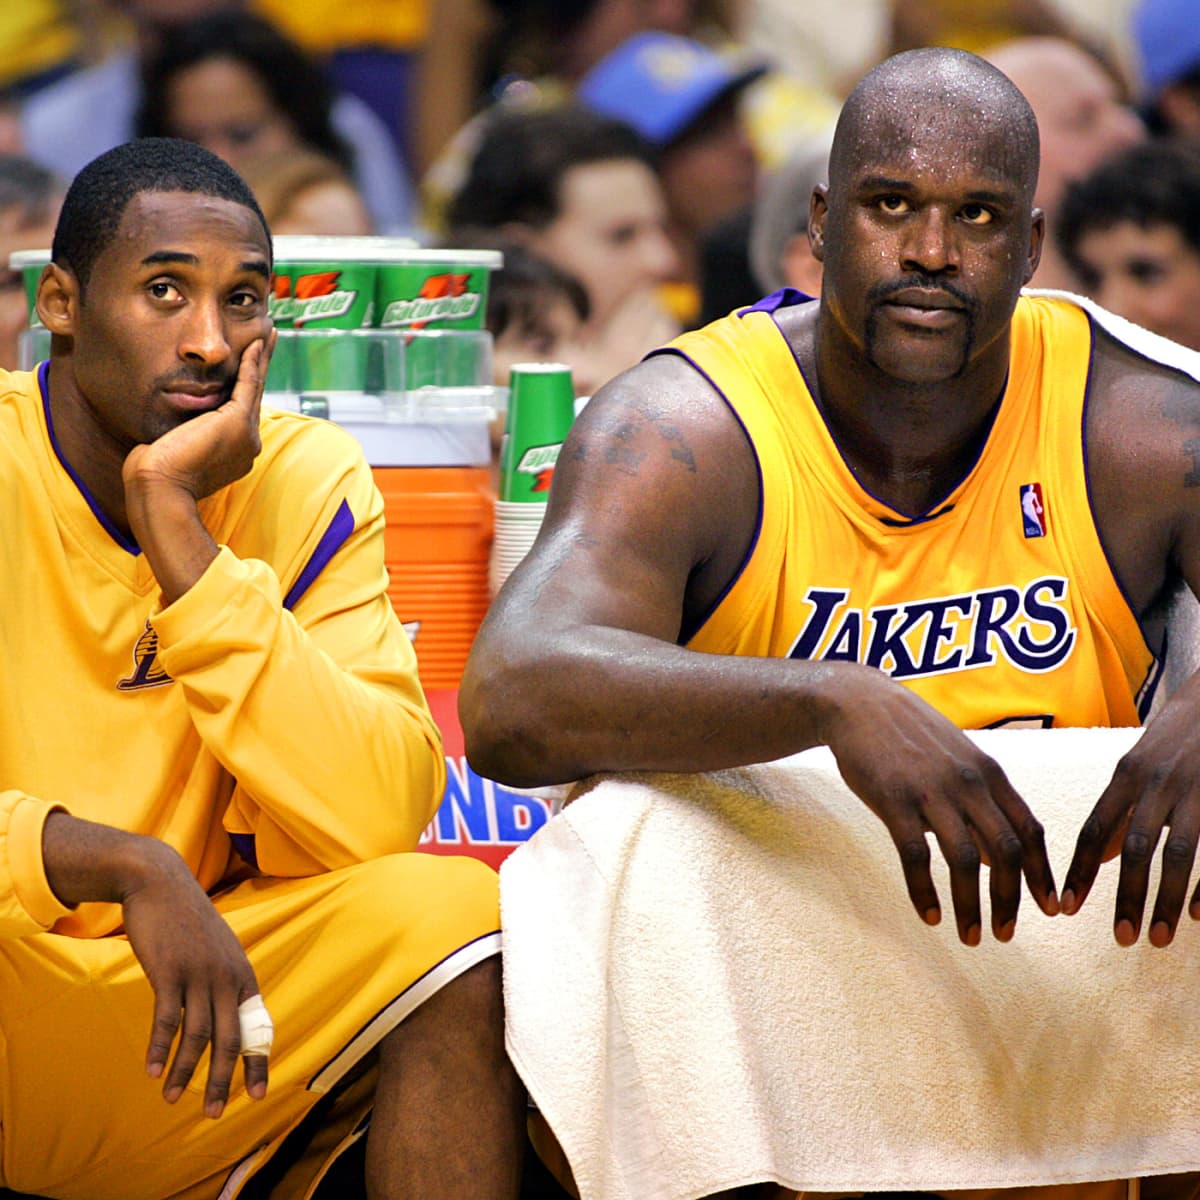 Shaq, Kobe still arebest show in NBA